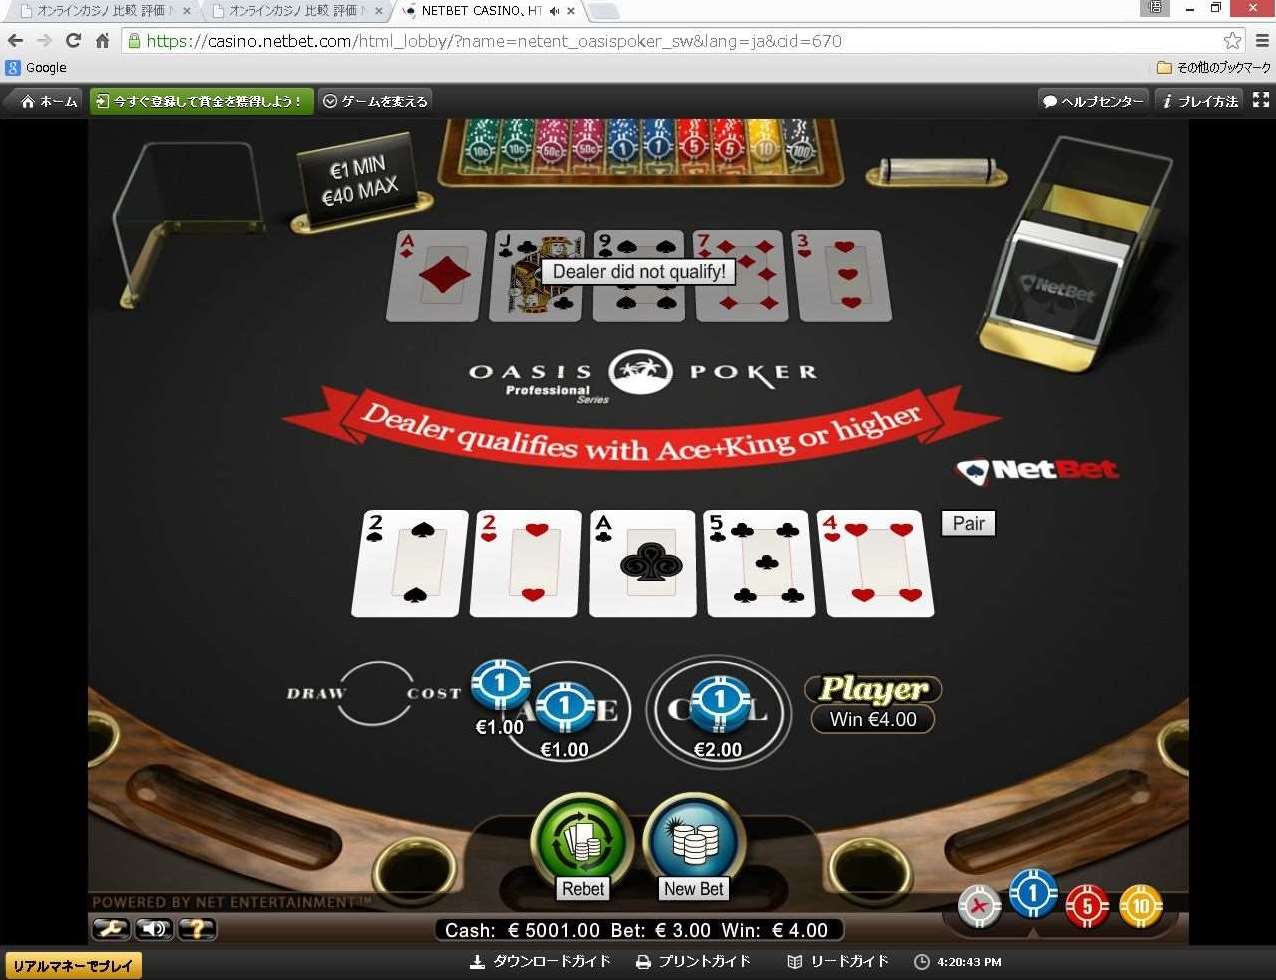 Oasis Poker Описание Игрового Автомата